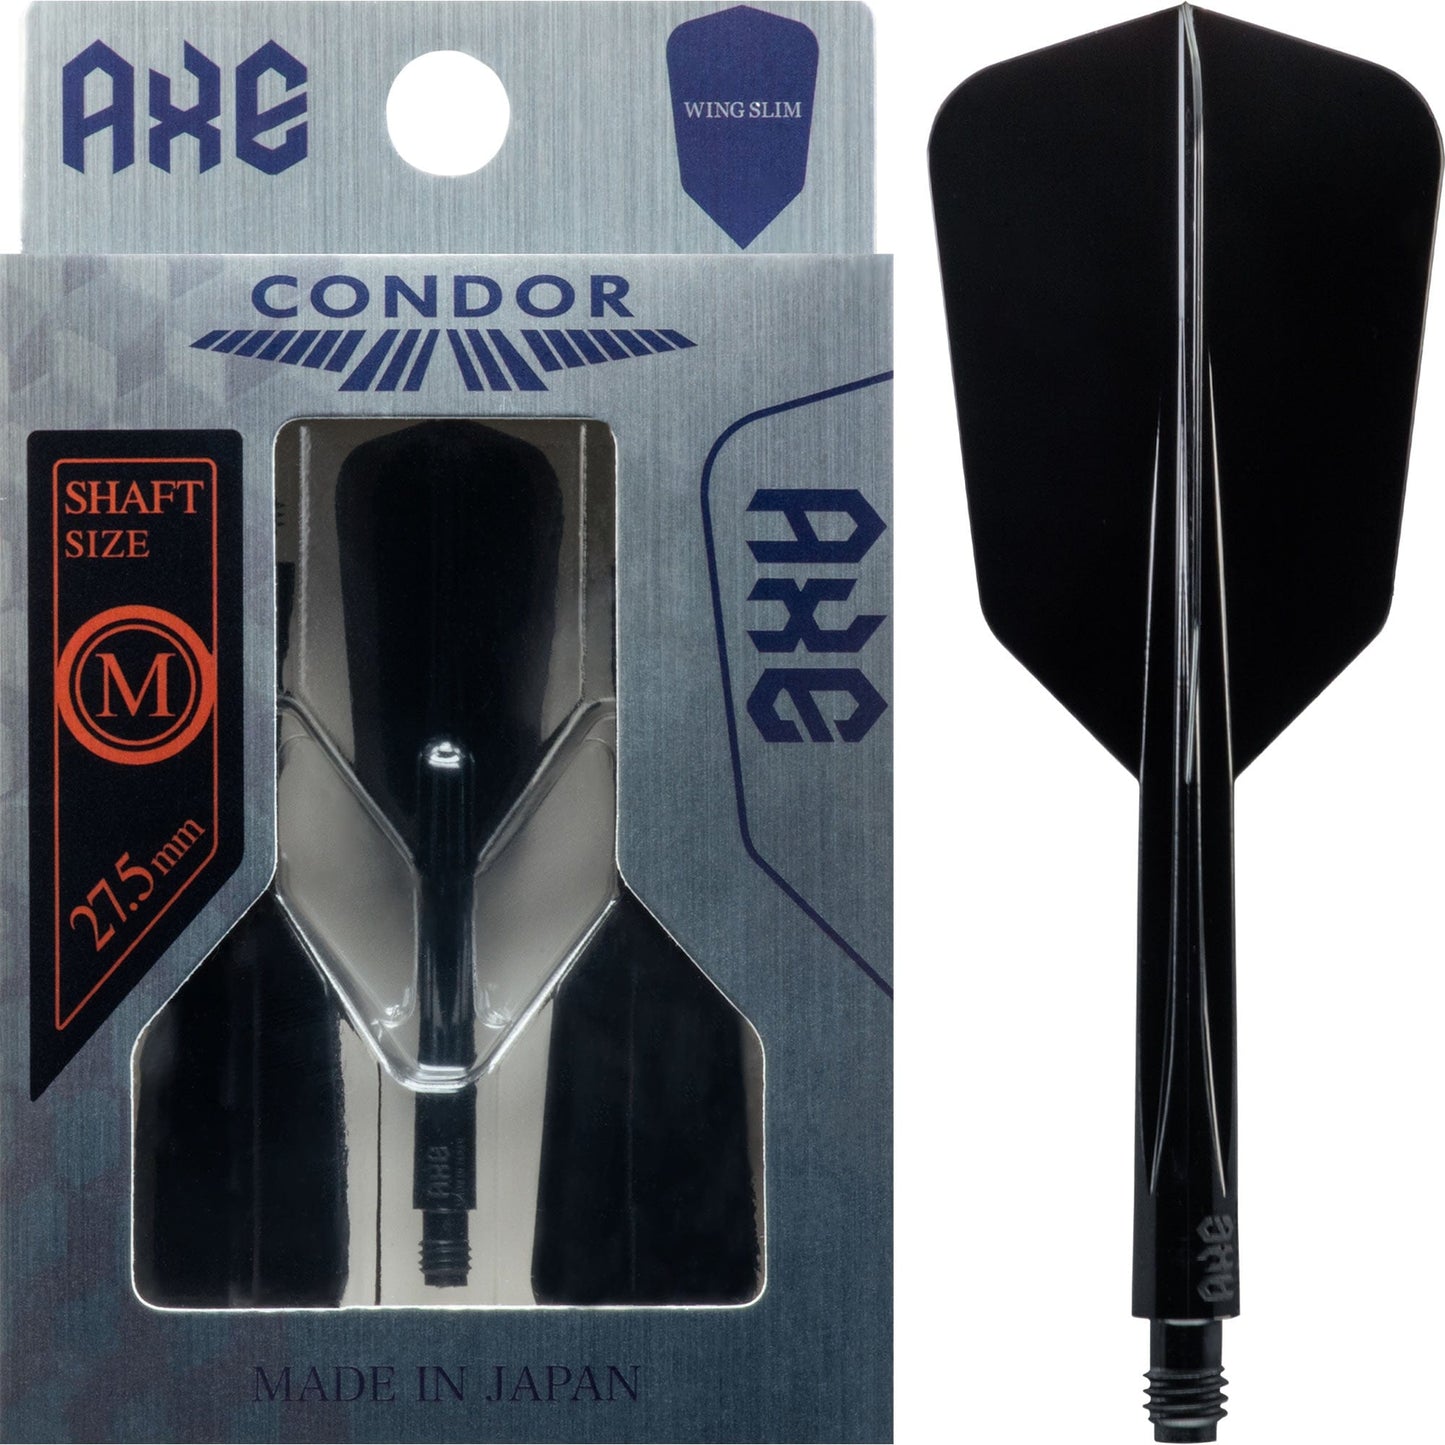 Condor AXE Dart Flights - Slim - Wing - Black Medium